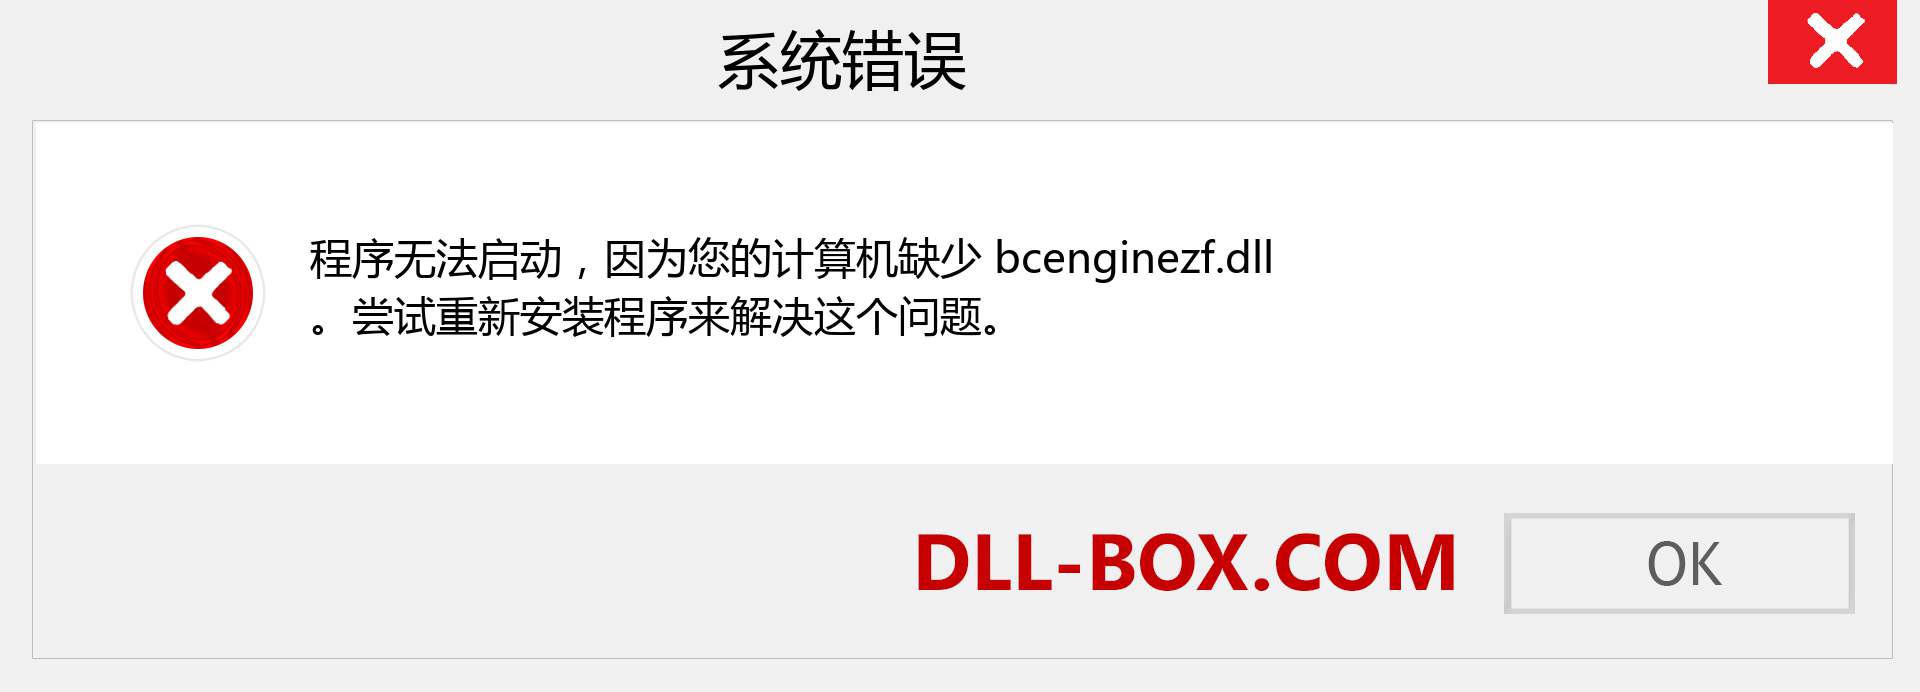 bcenginezf.dll 文件丢失？。 适用于 Windows 7、8、10 的下载 - 修复 Windows、照片、图像上的 bcenginezf dll 丢失错误